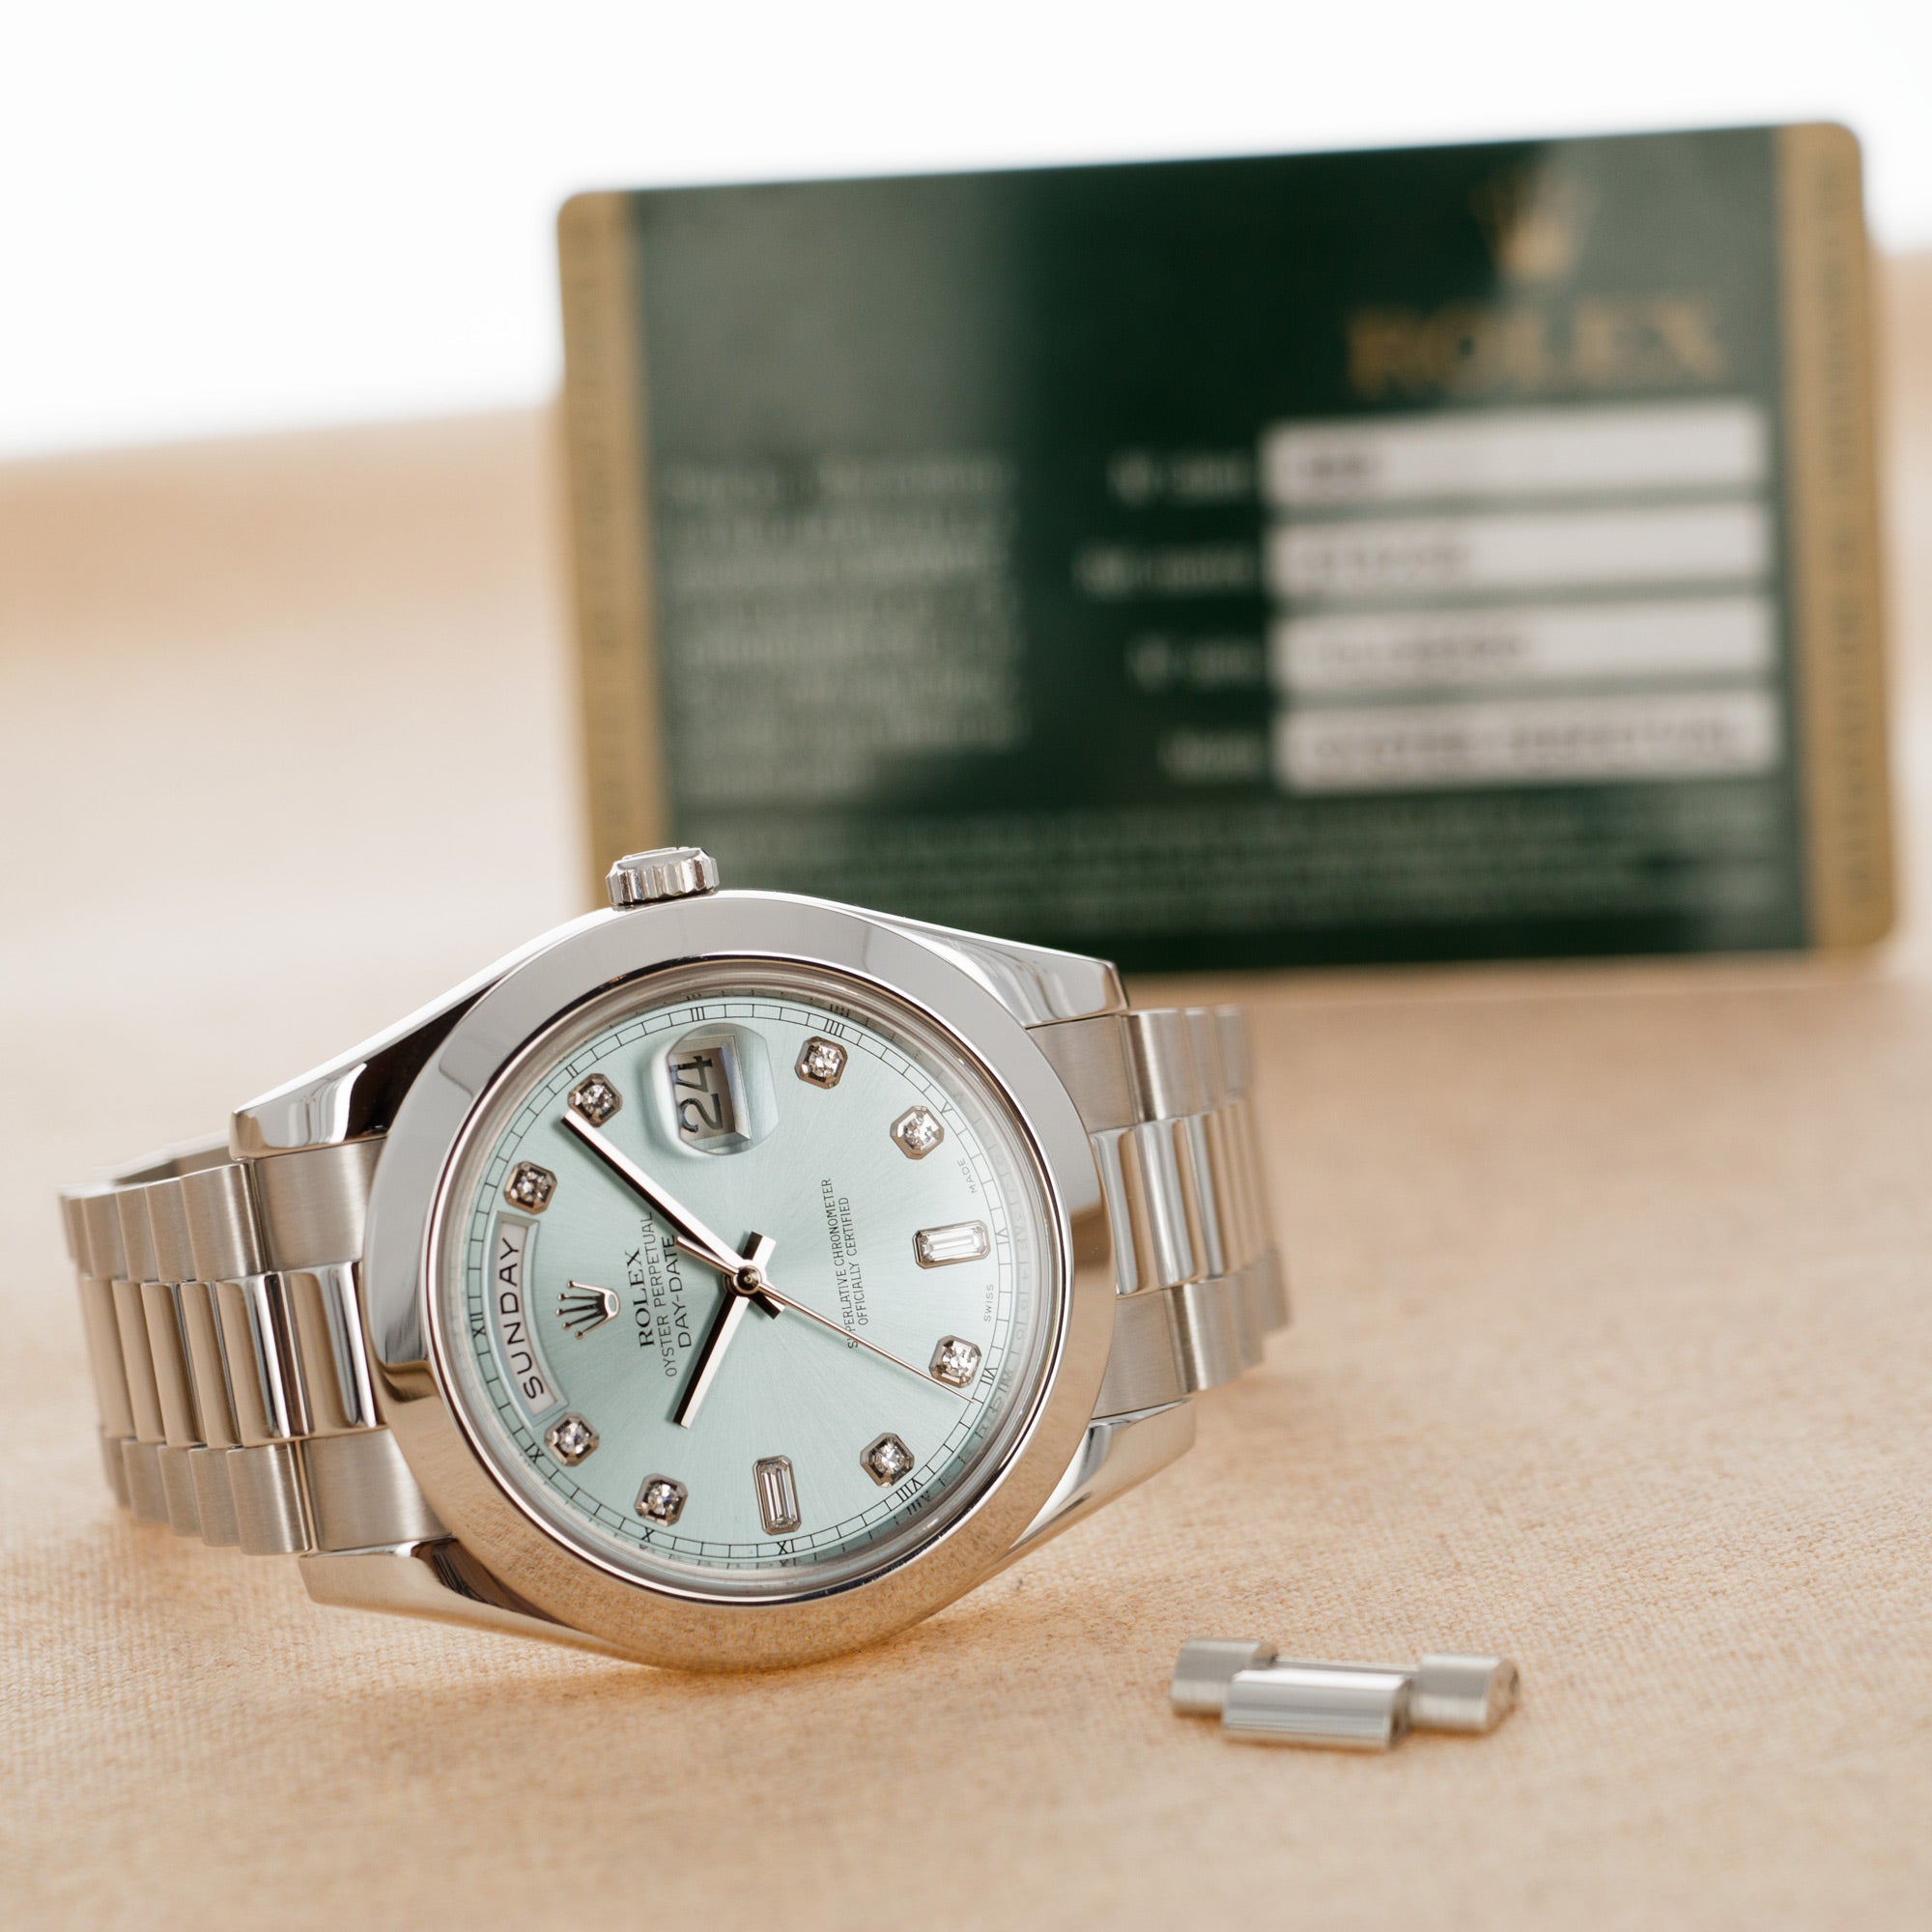 Rolex - Rolex Platinum Day-Date Ref. 218206 - The Keystone Watches